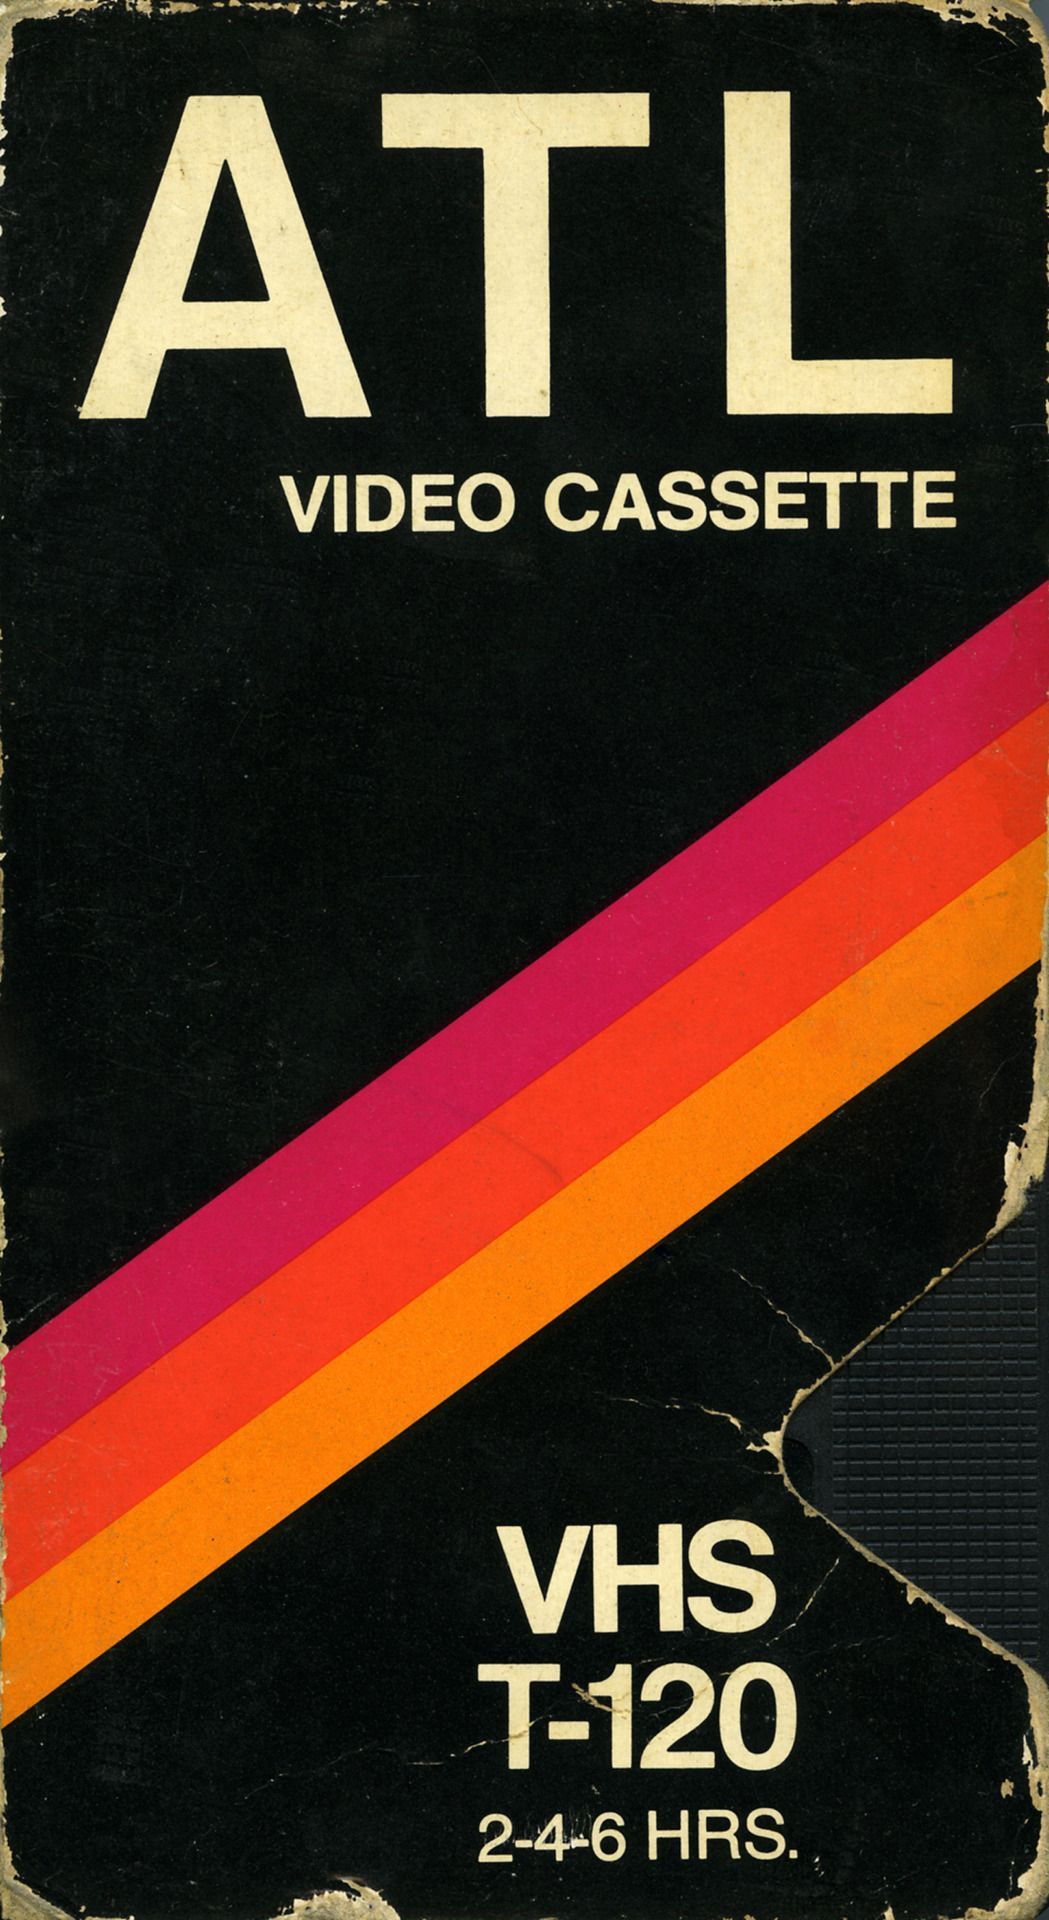 VAULT OF VHS. Retro graphic design, Graphic design posters, Graphic design inspiration